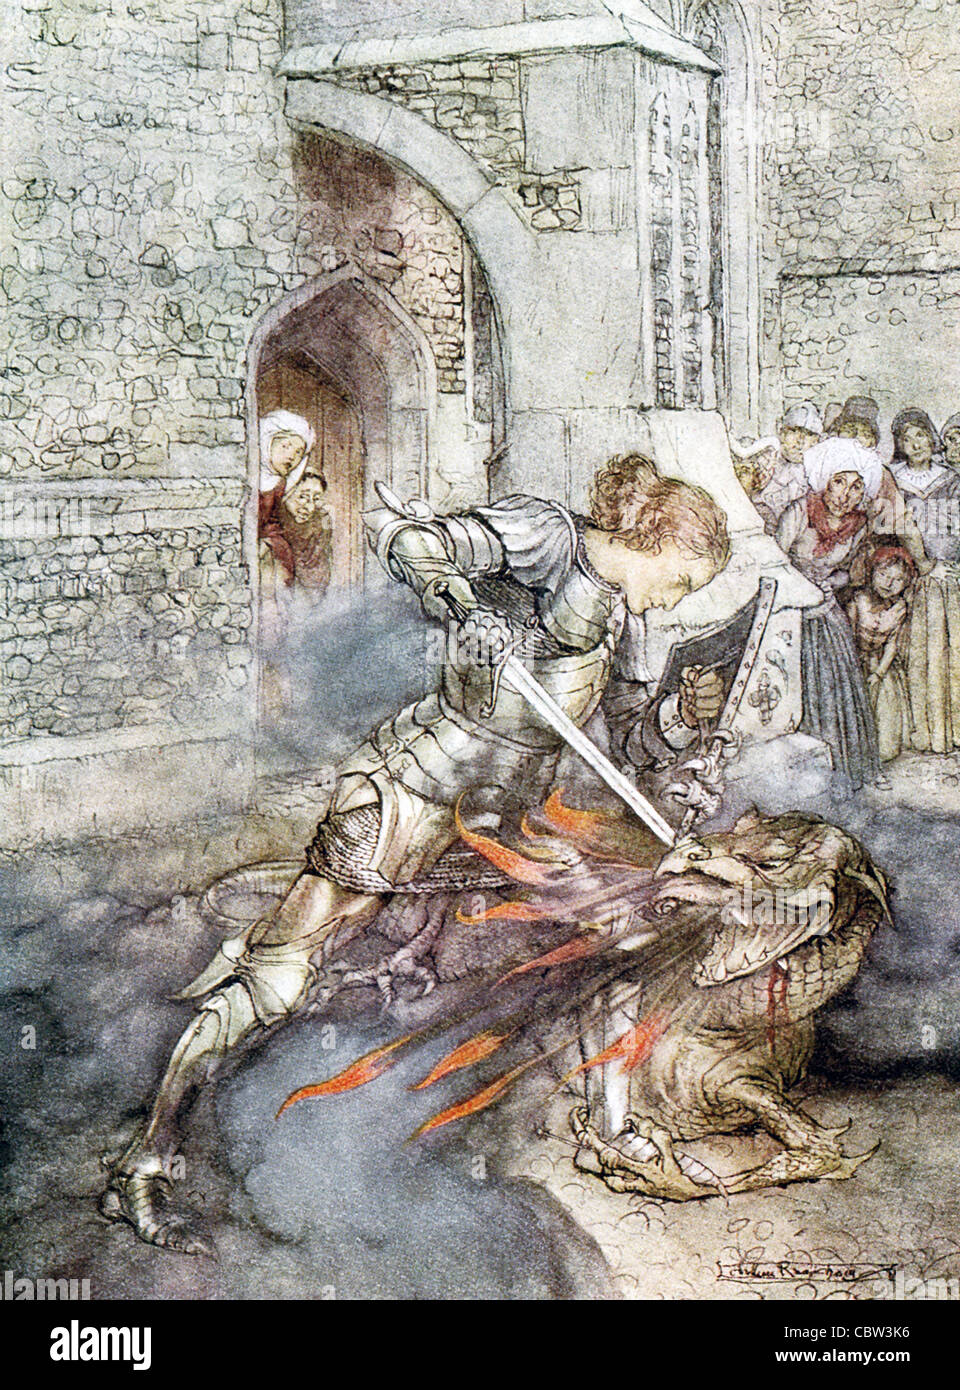 Nella leggenda arturiana, Lancelot (mostrato qui) e Tristan sono entrambi i cavalieri della Tavola Rotonda e dragon cacciatrici. Foto Stock